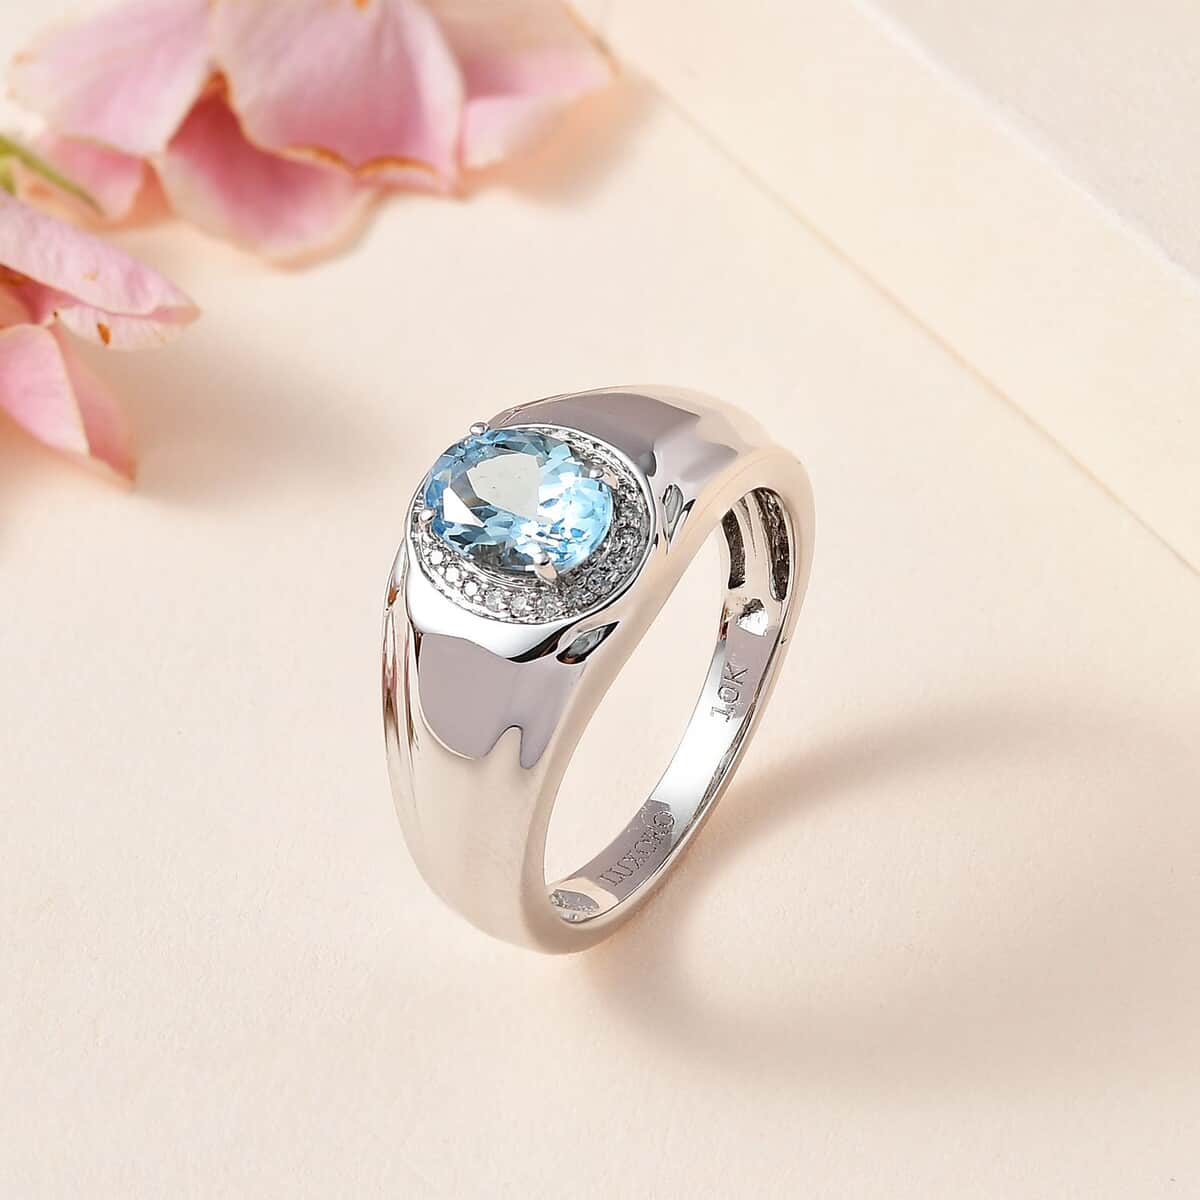 Luxoro 10K White Gold Premium Santa Maria Aquamarine and G-H I2 Diamond Men's Ring (Size 10.0) 6.15 Grams 1.20 ctw image number 1